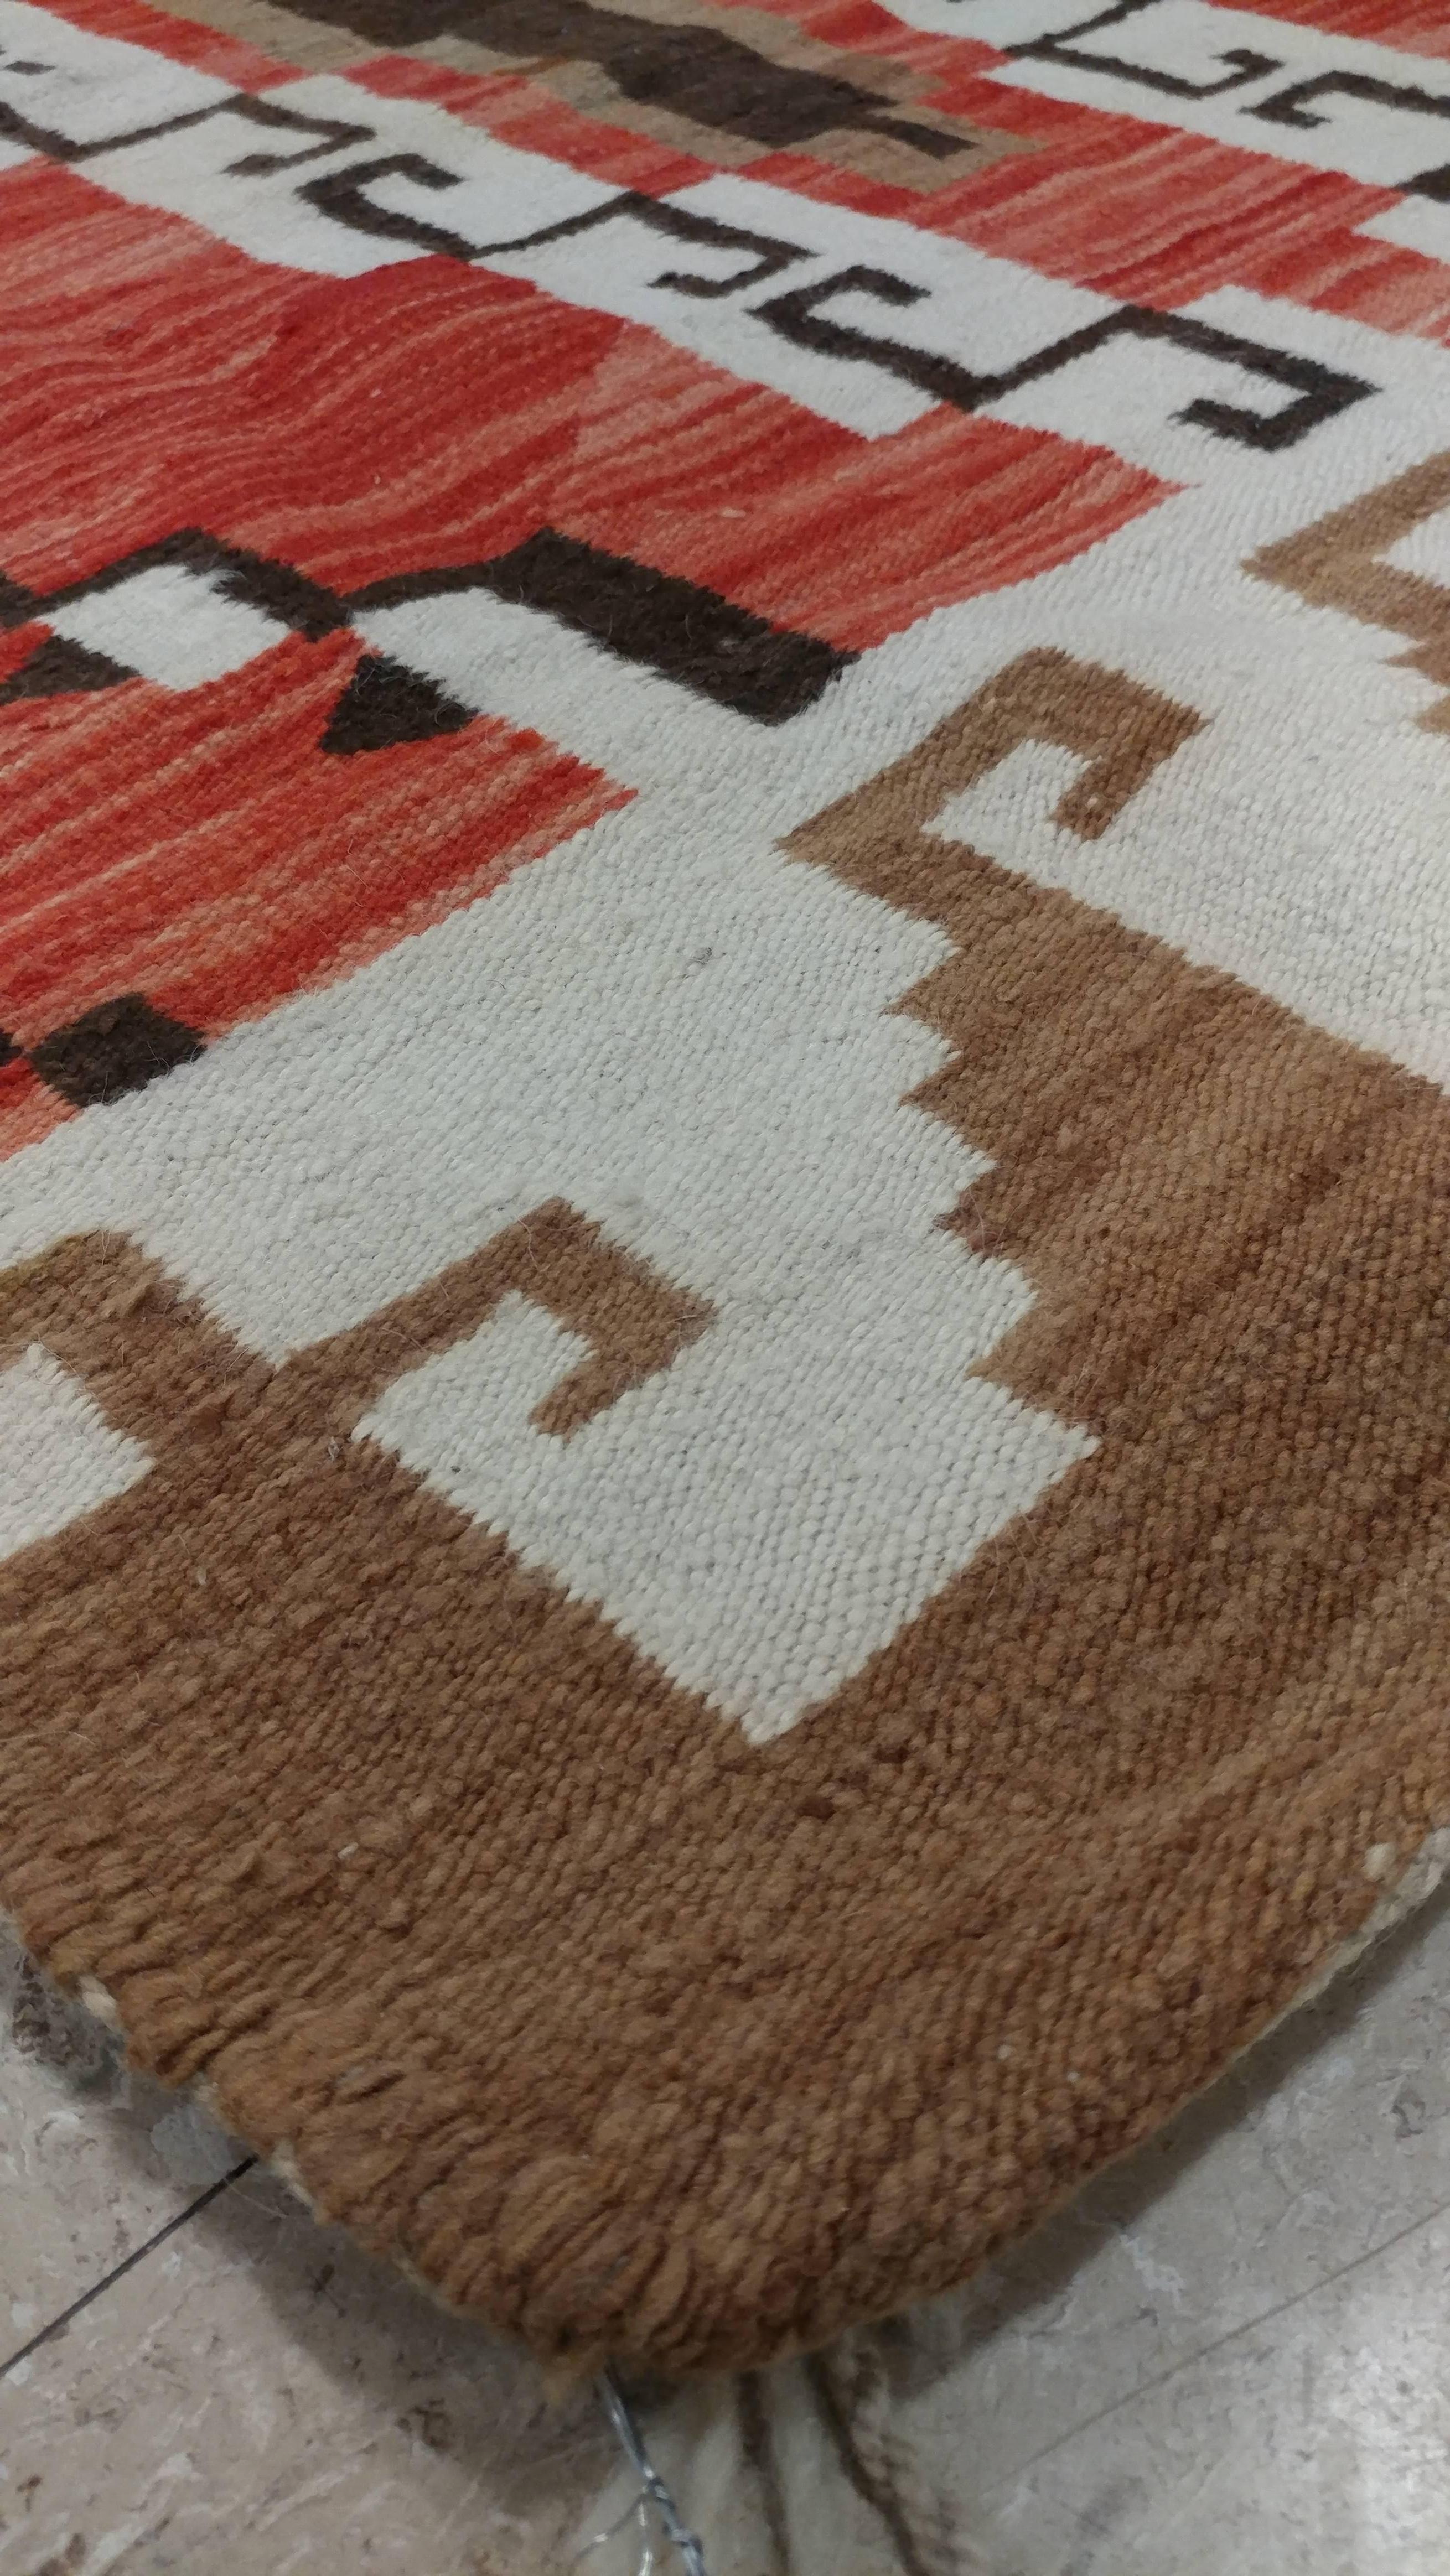 Hand-Knotted Vintage Navajo Carpet, Folk Rug, Handmade Wool Rug, Tan, Coral, Beige